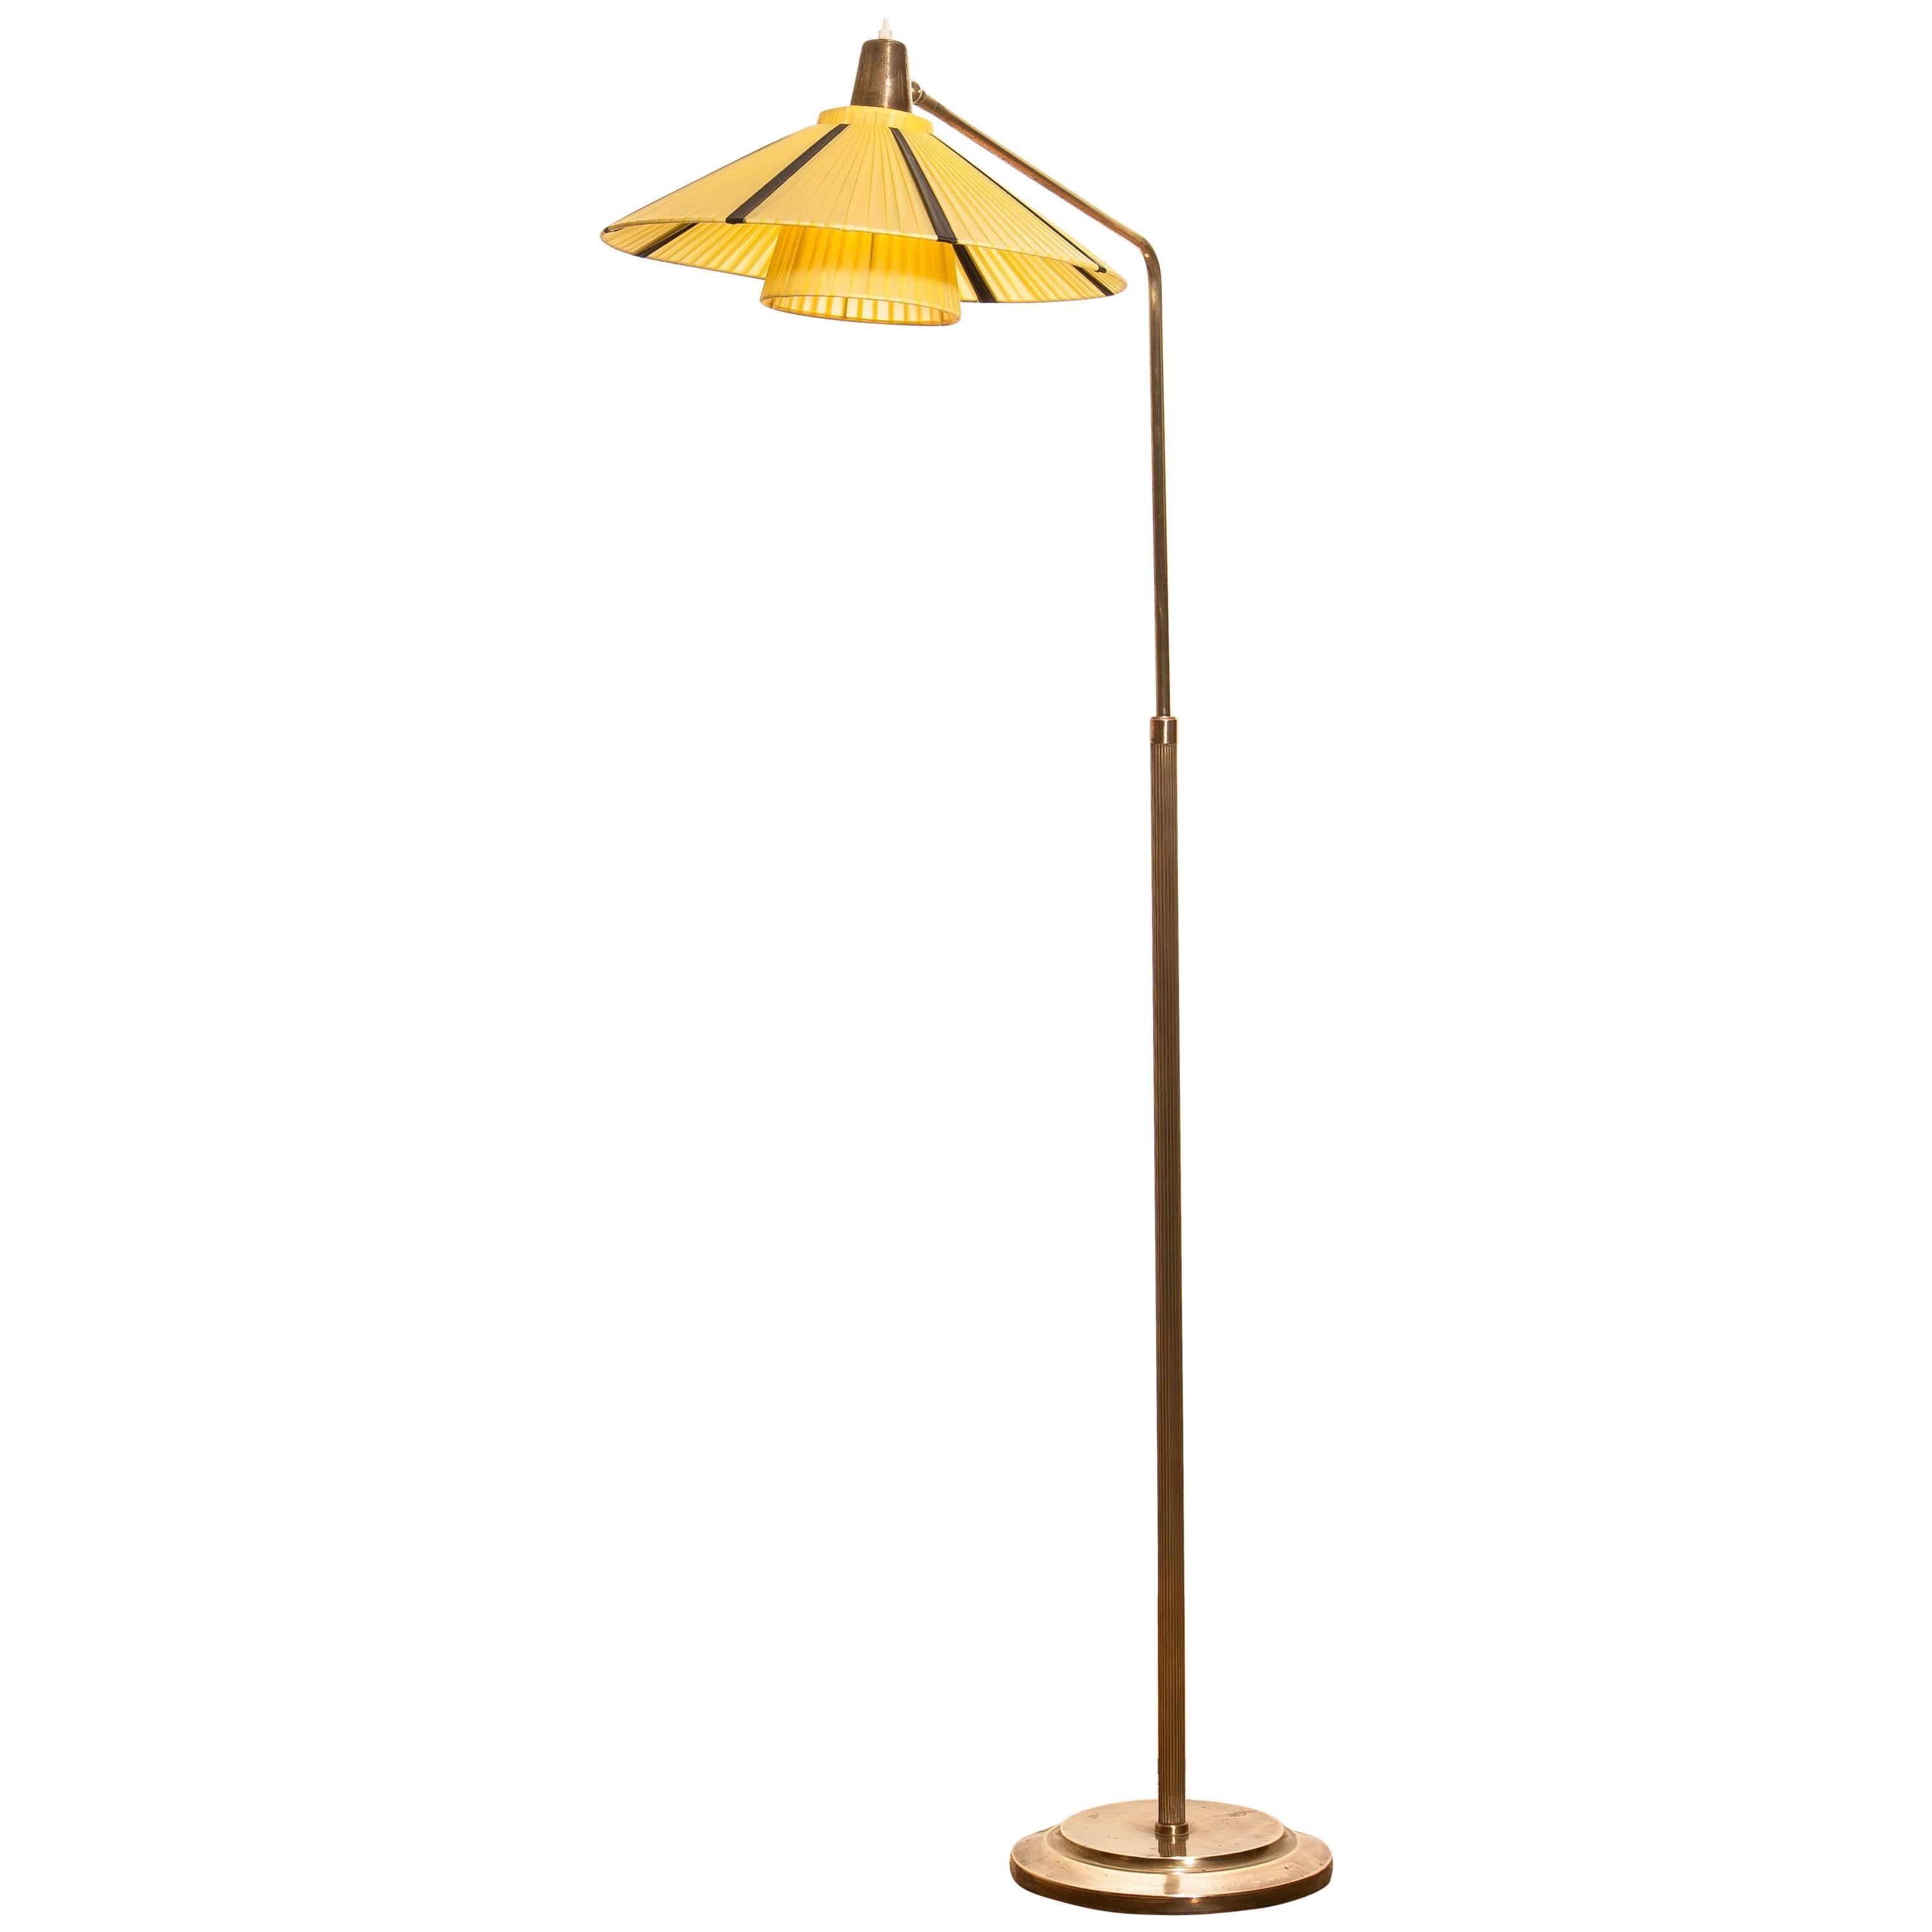 1920-1930, Brass Art Deco / Jugendstil Floor Lamp Made in Sweden